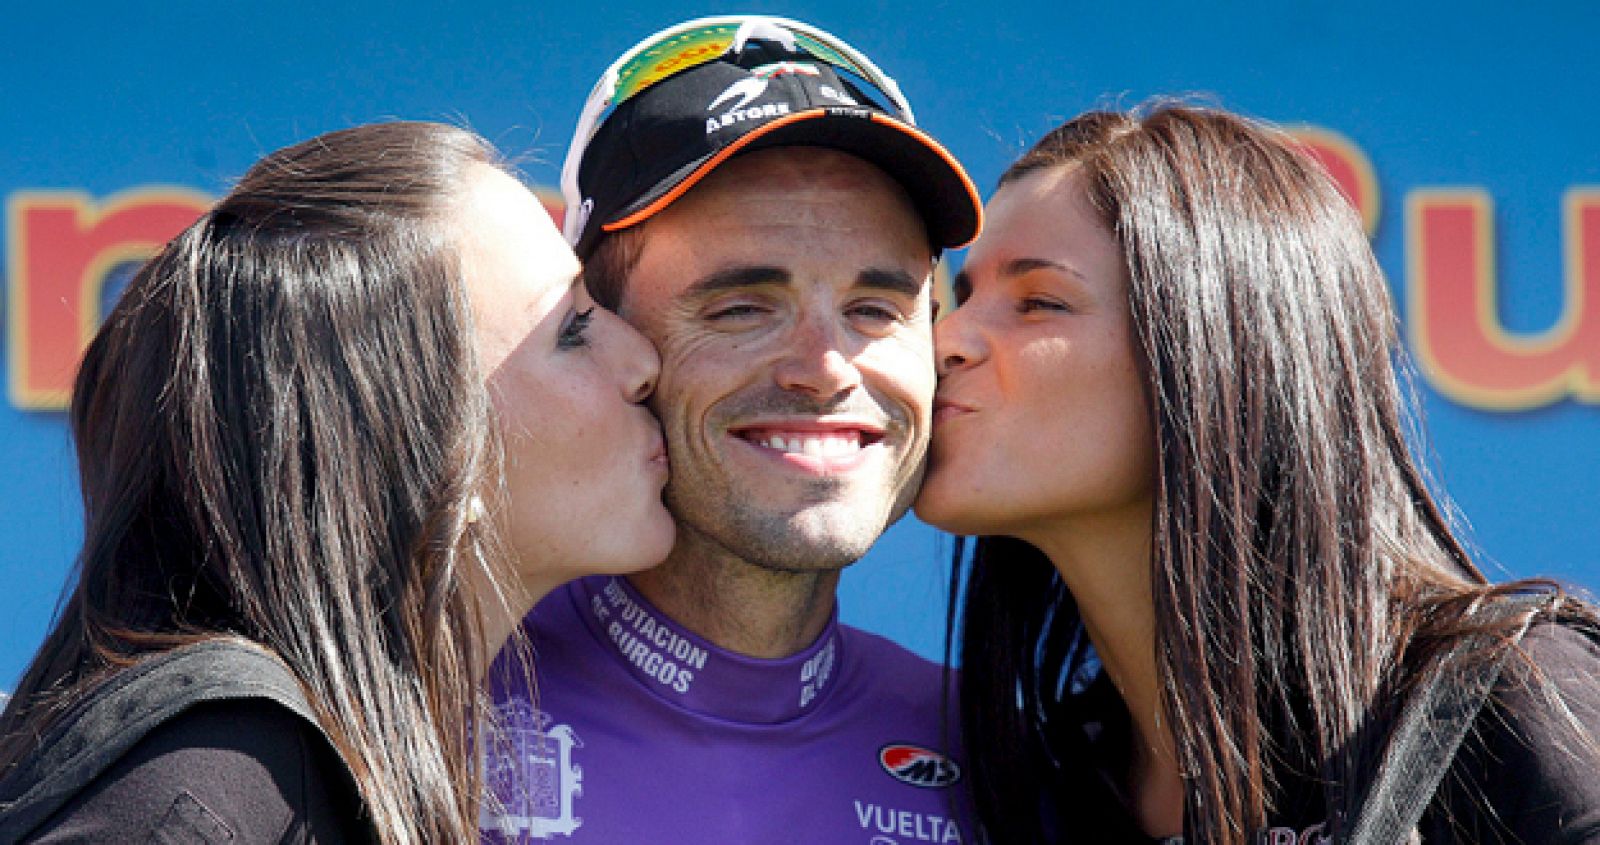 Samuel Sánchez, con el maillot de ganador de la Vuelta a Burgos, es felicitado en el podio.